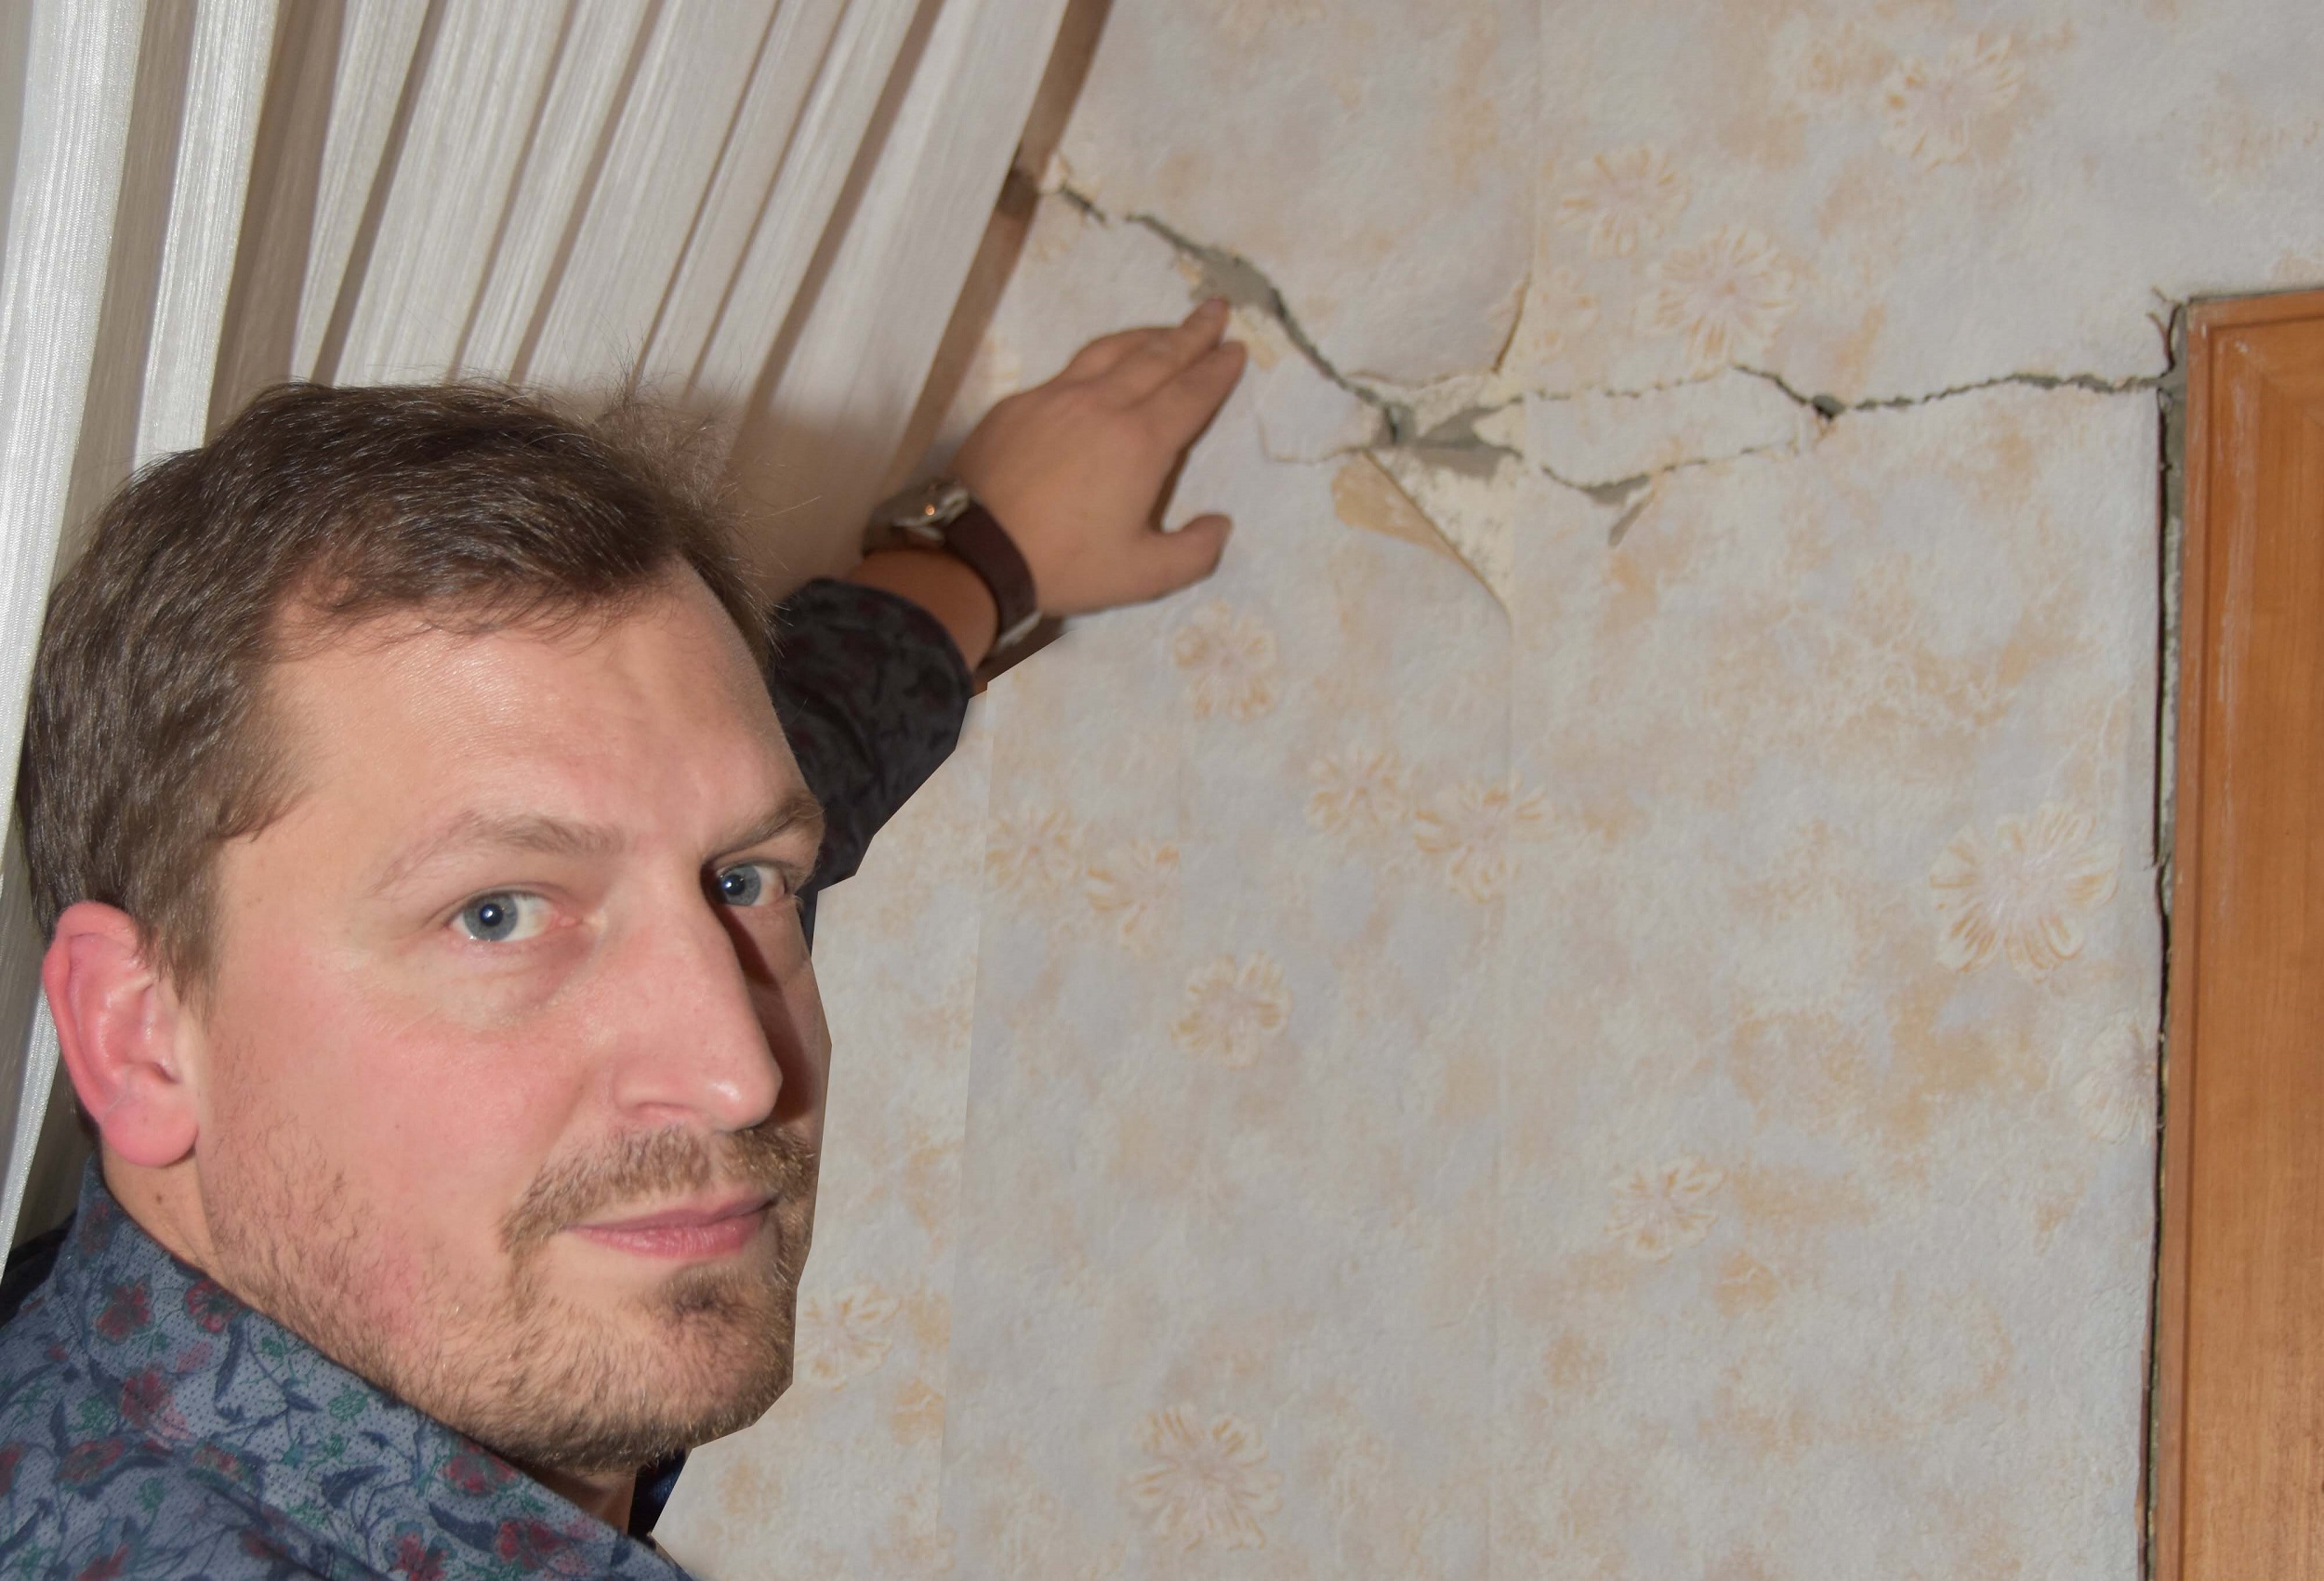 Massiver Riss: Ralf Hartmann zeigt eine markant beschädigte Stelle im Haus. Foto: Tzimurtas